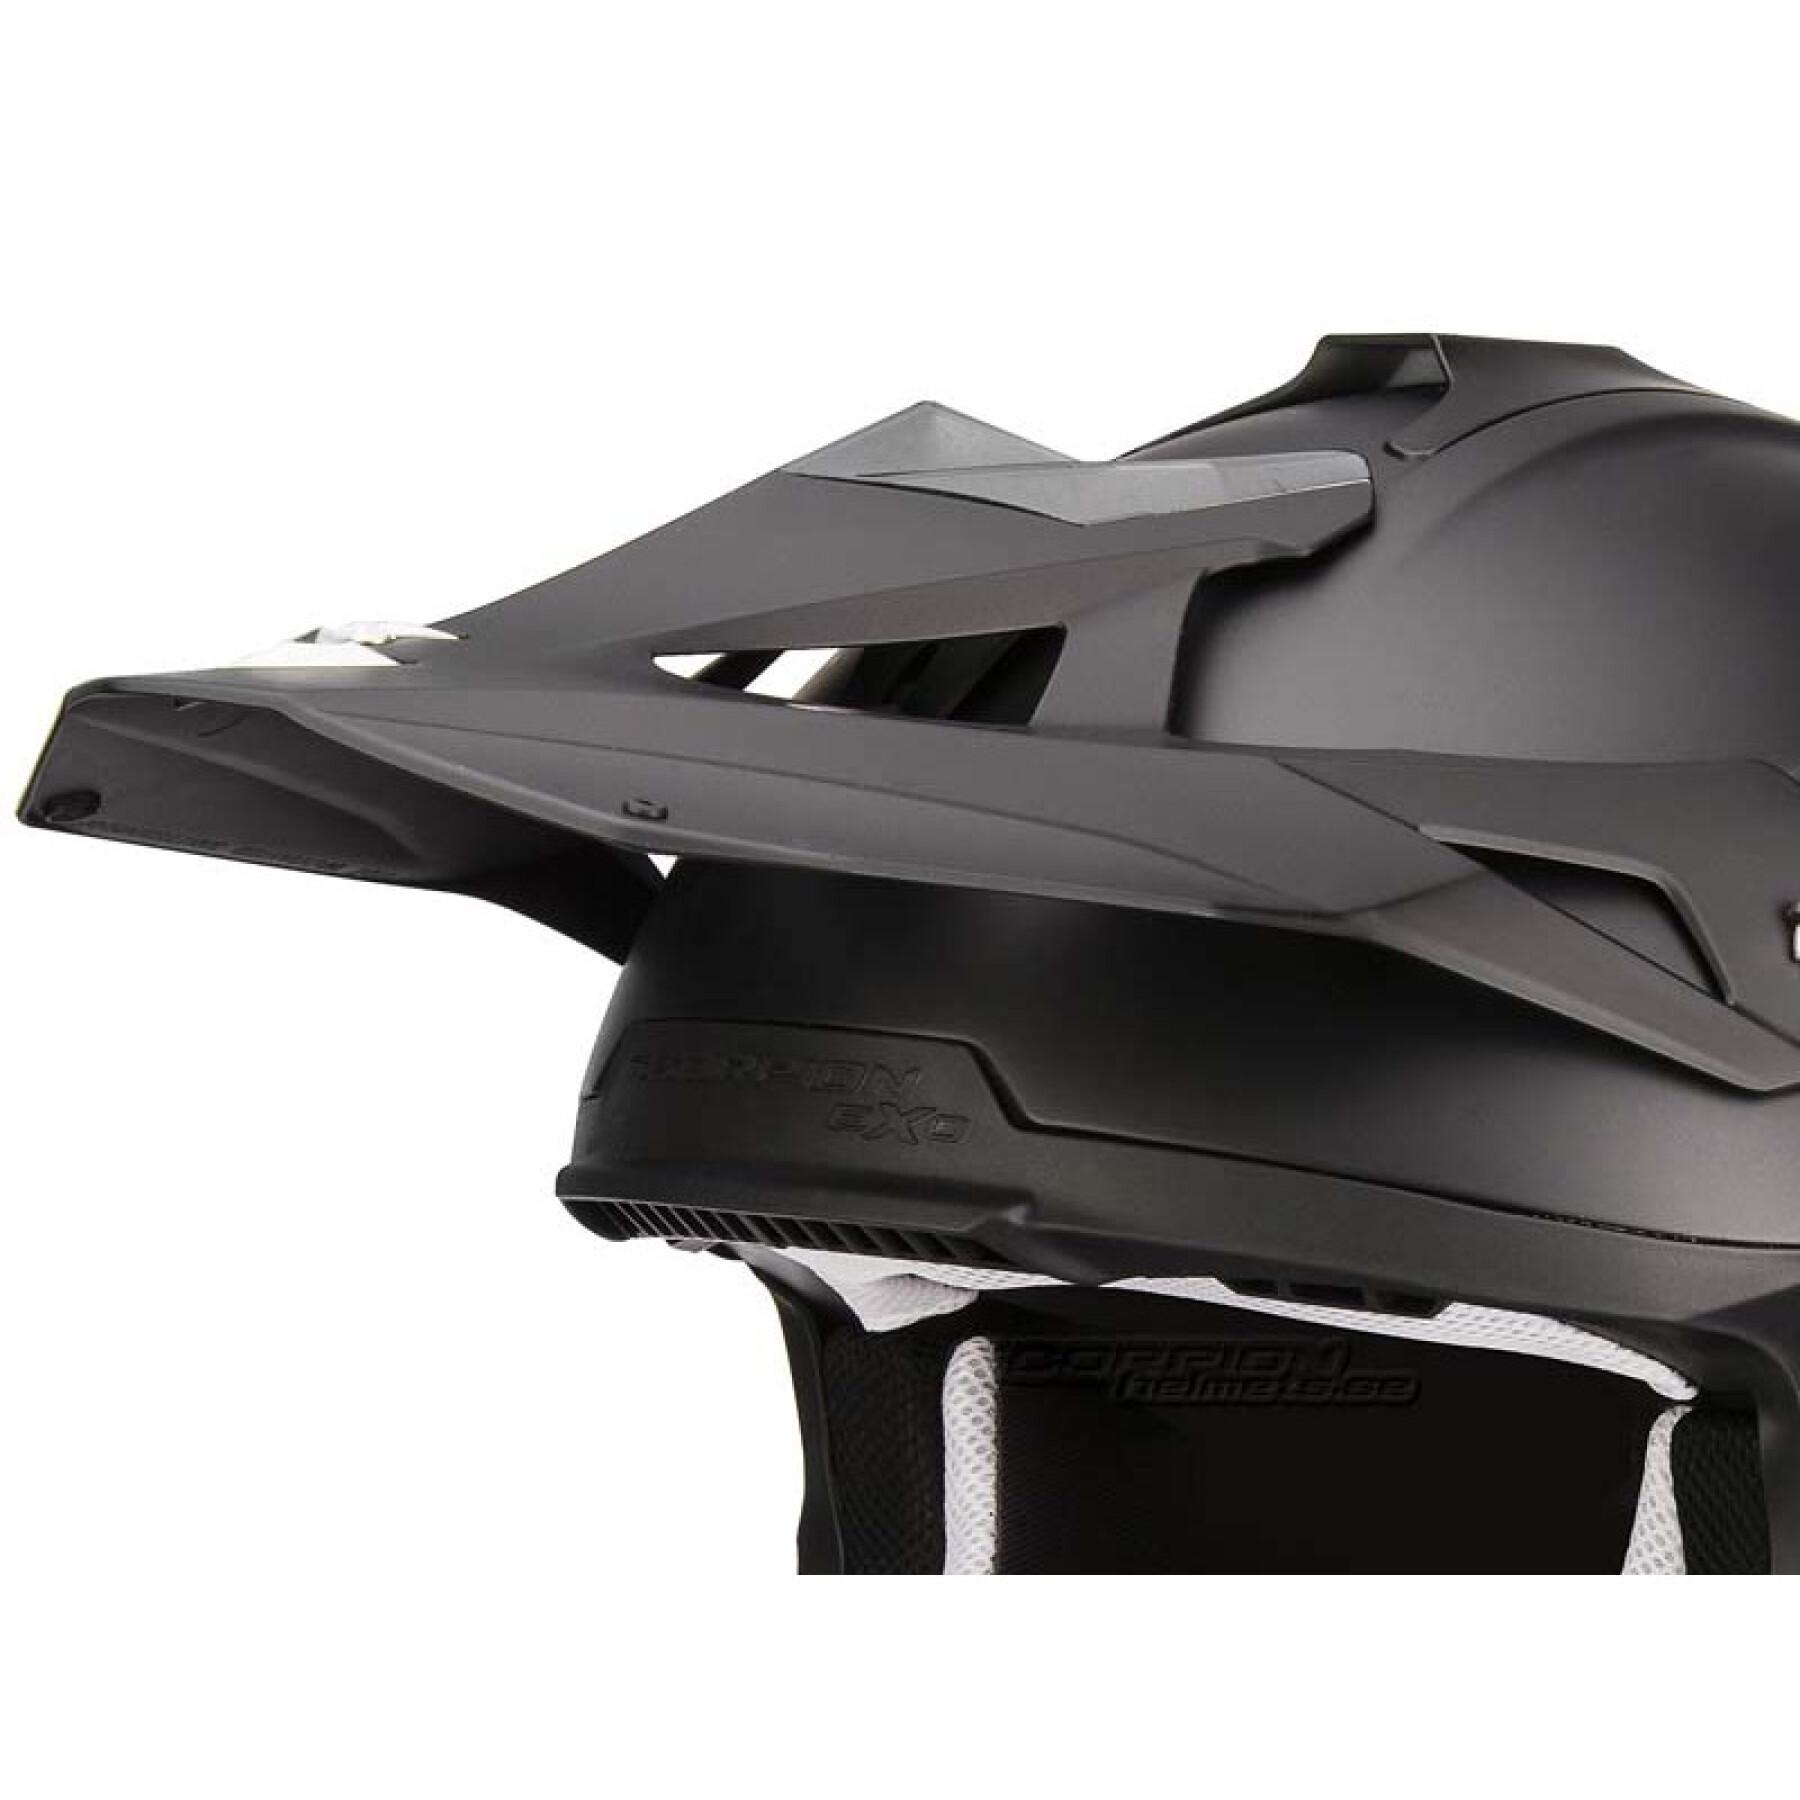 Visera para casco de moto Scorpion VX-15 Evo Air Peak